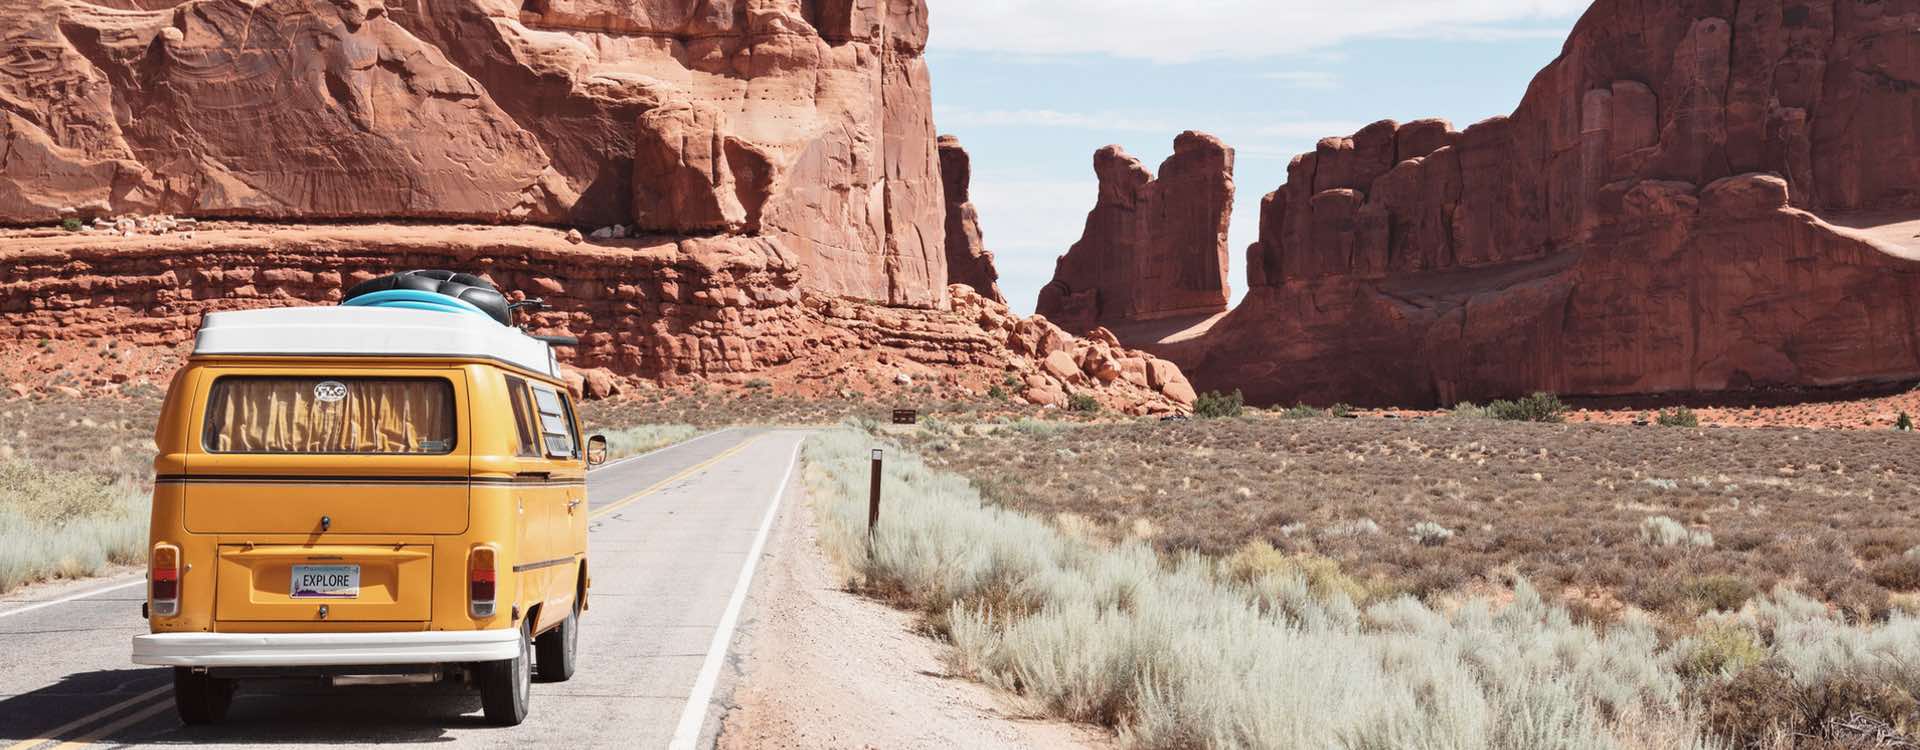 Explore yellow van on desert road